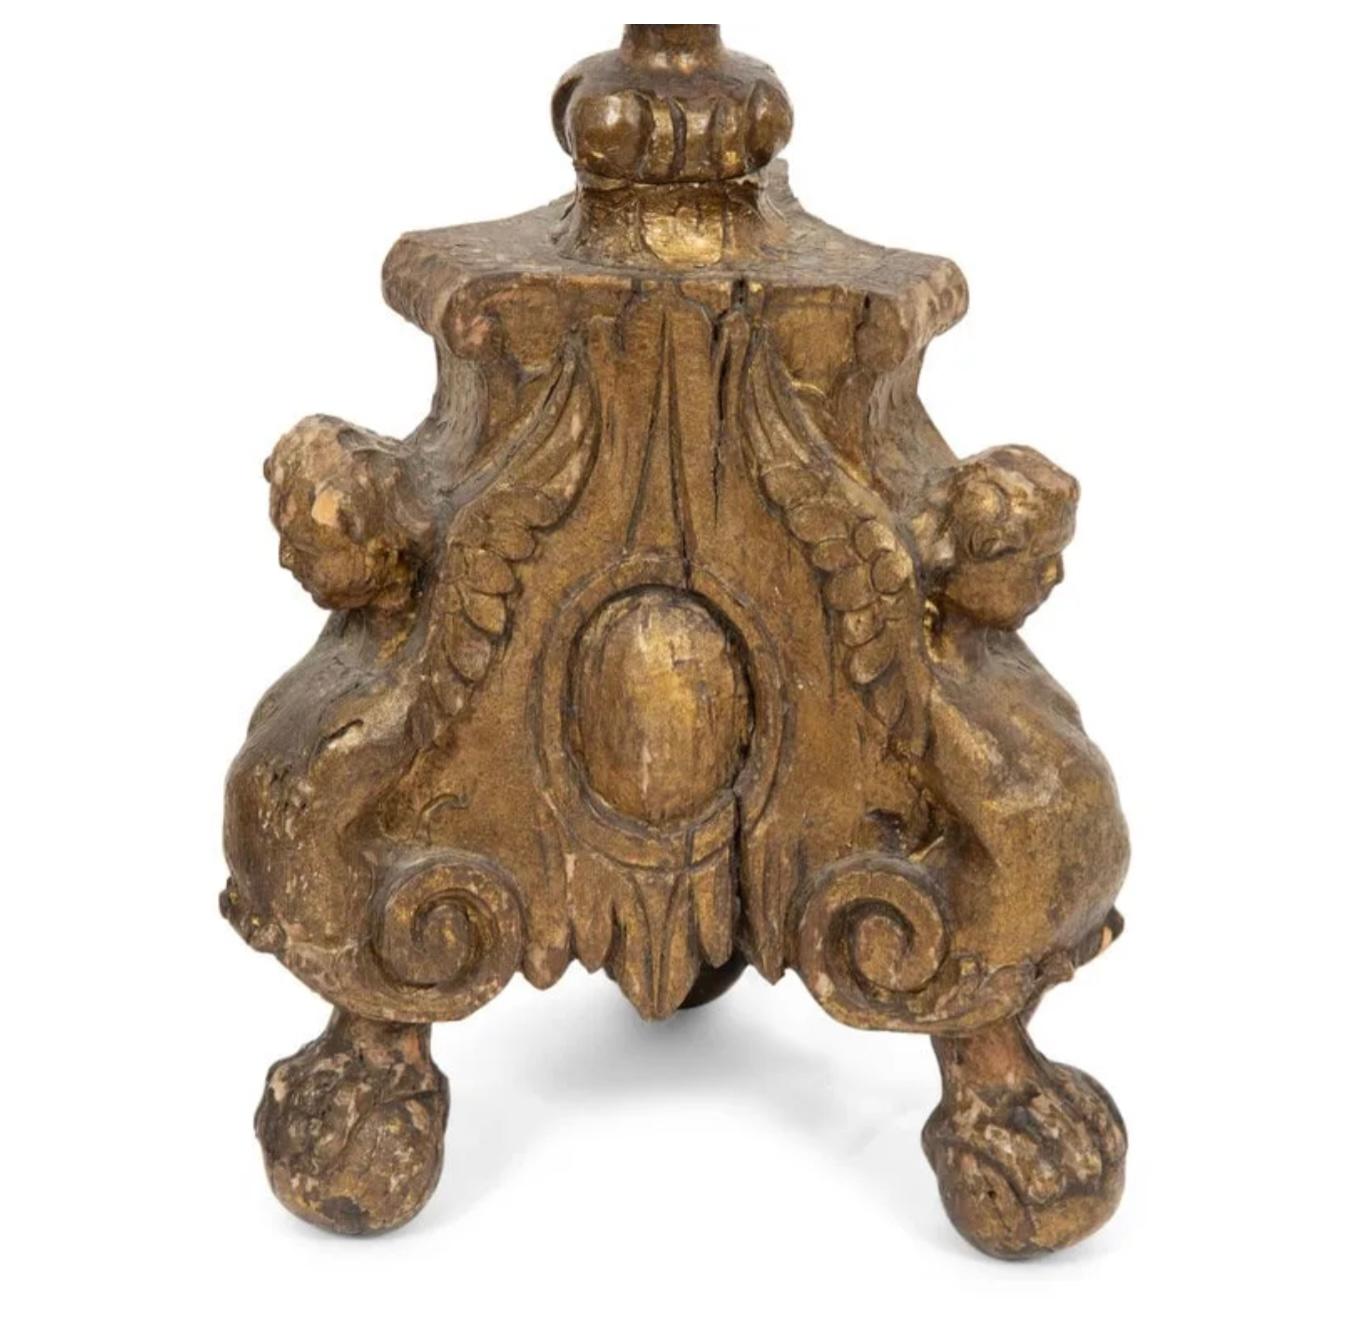 Ein Paar vergoldete Pricket-Kerzenhalter aus dem 18. Jahrhundert, jetzt als Tischlampen montiert. Durchgehend geschnitztes, verziertes Holz, getragen von dreiförmigen Sockeln mit Puttenköpfen und Rankenfüßen. Wunderschöne alte Patina.
